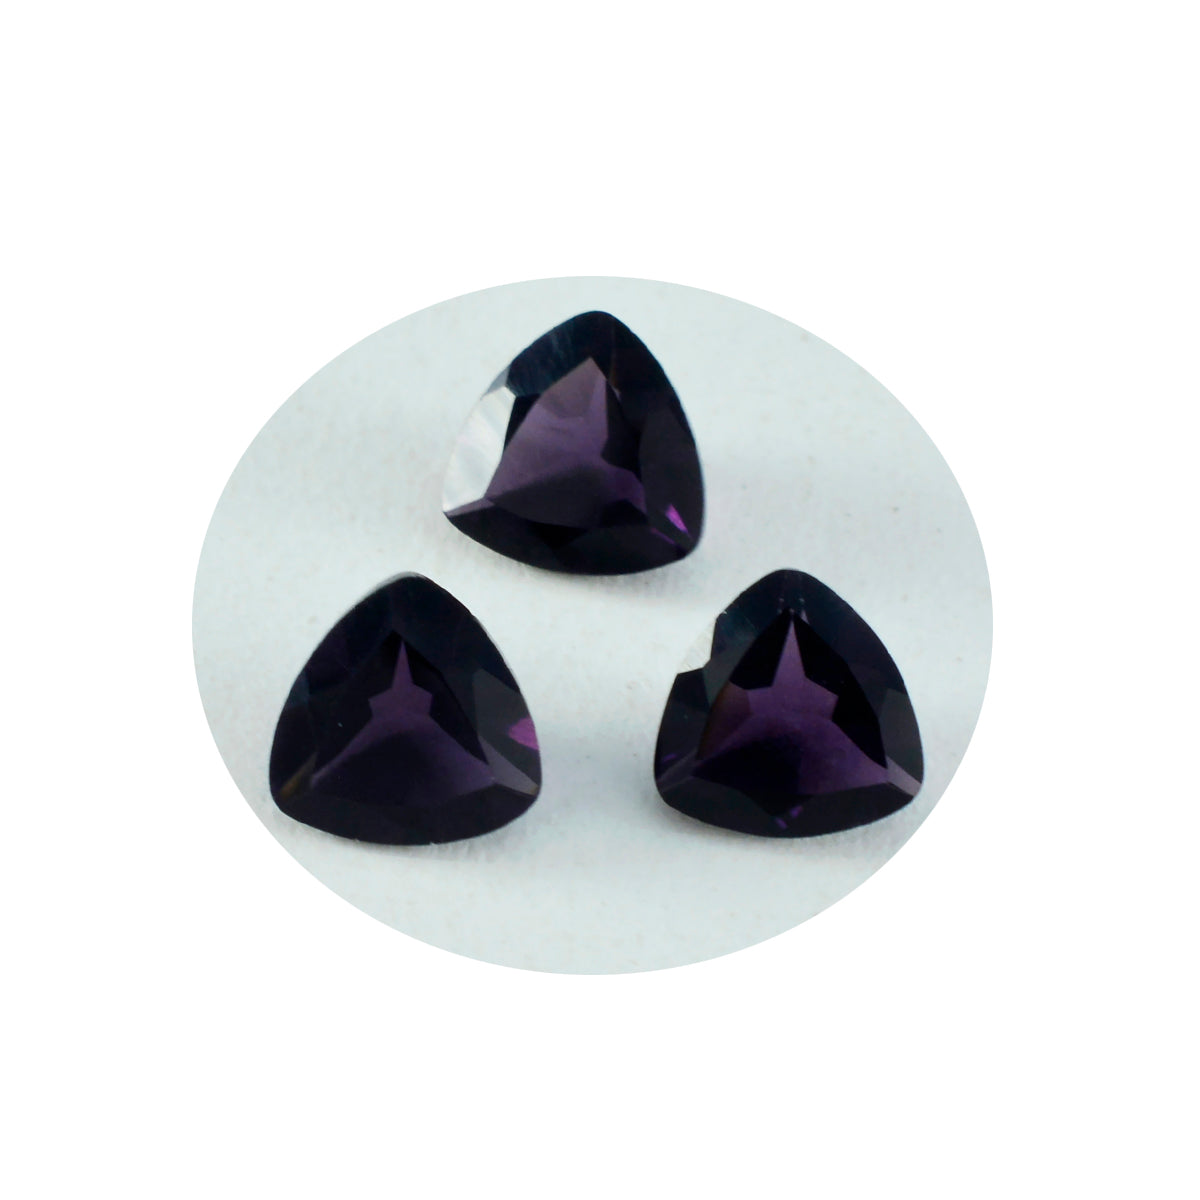 Riyogems 1 Stück violetter Amethyst mit CZ, facettiert, 15 x 15 mm, Billionenform, hübscher, hochwertiger loser Stein